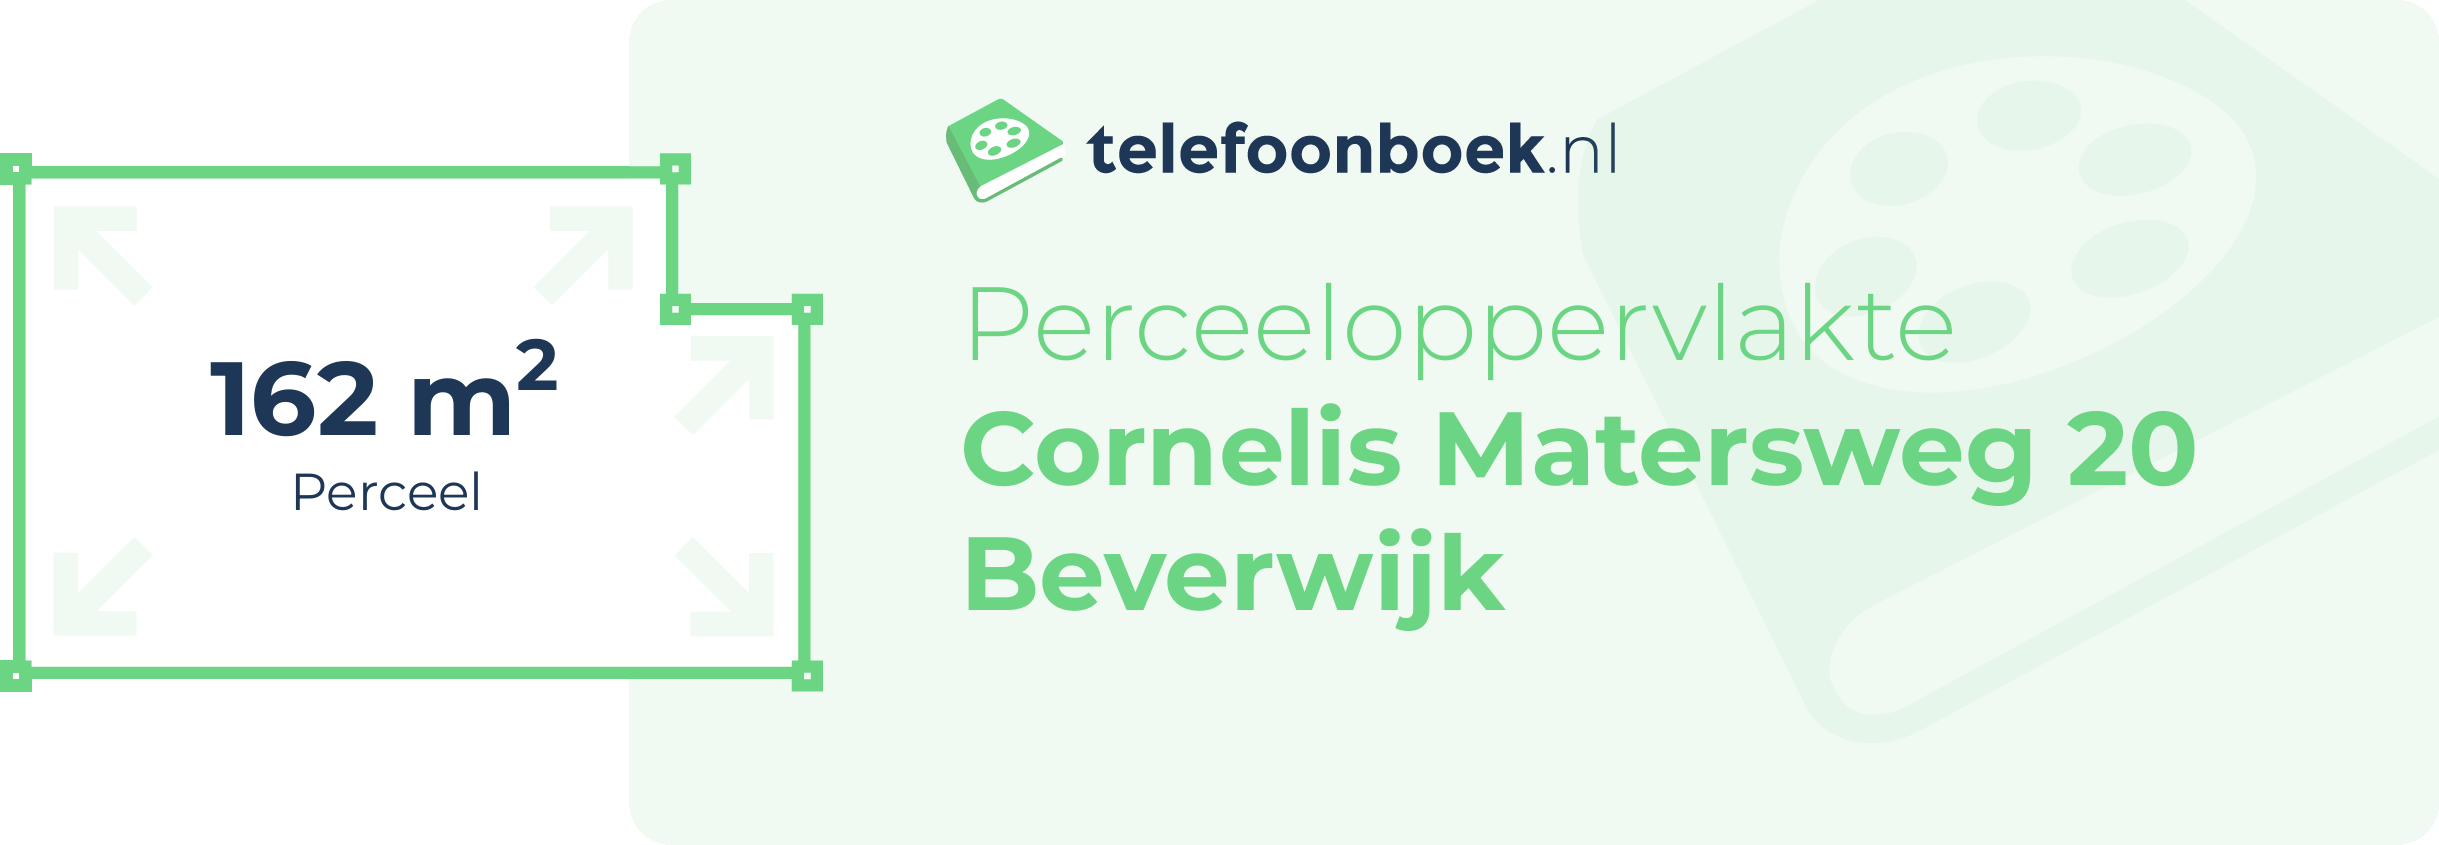 Perceeloppervlakte Cornelis Matersweg 20 Beverwijk